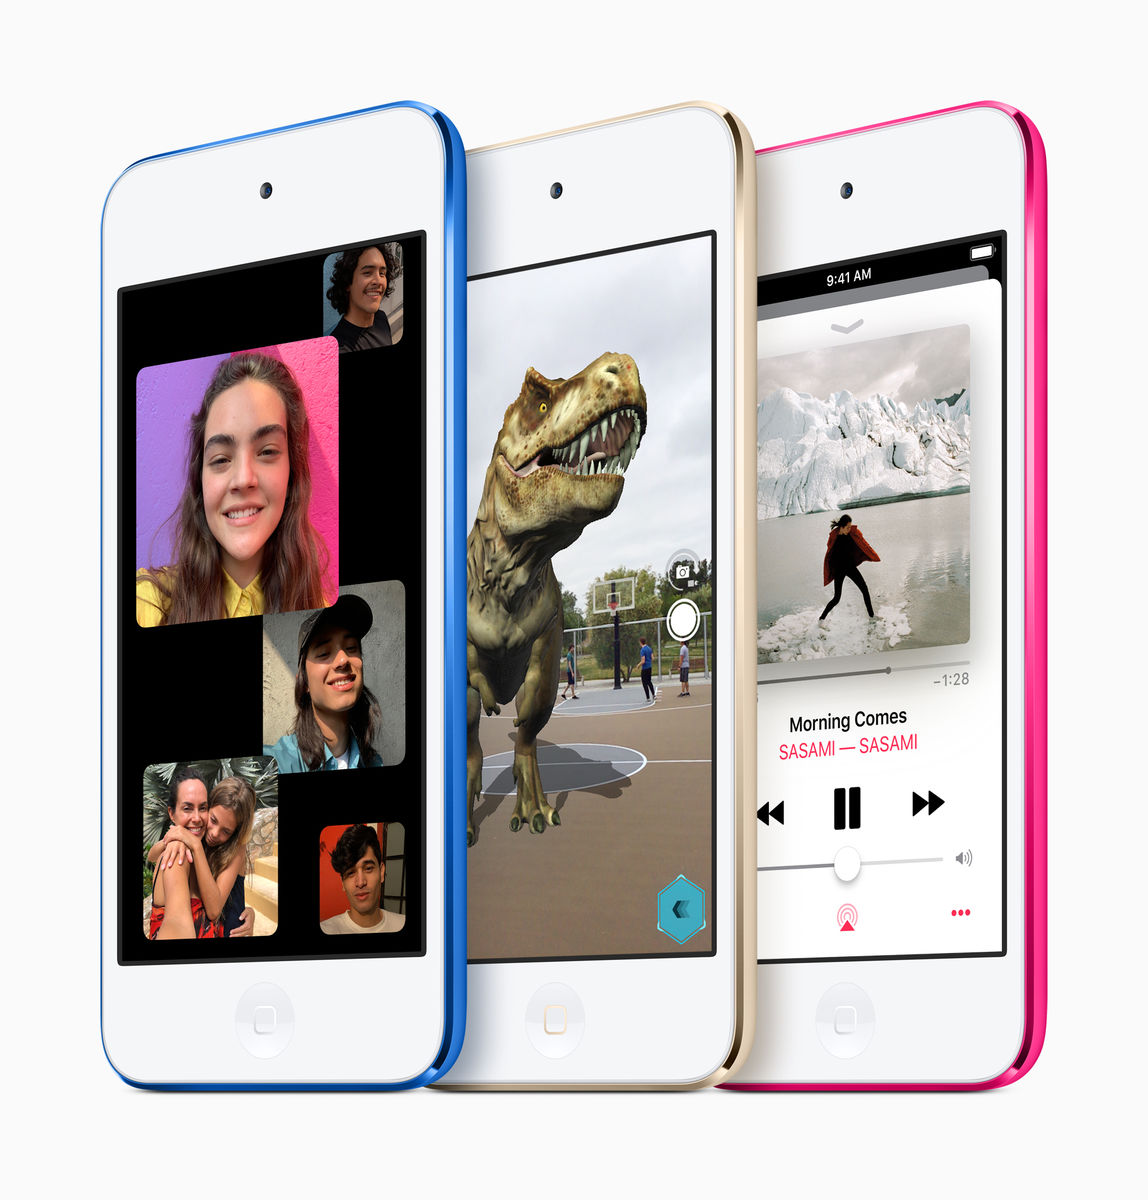 Appleが4年ぶりに新型「iPod touch」を発売、iPhone 7と同じA10 Fusionチップ搭載 - GIGAZINE